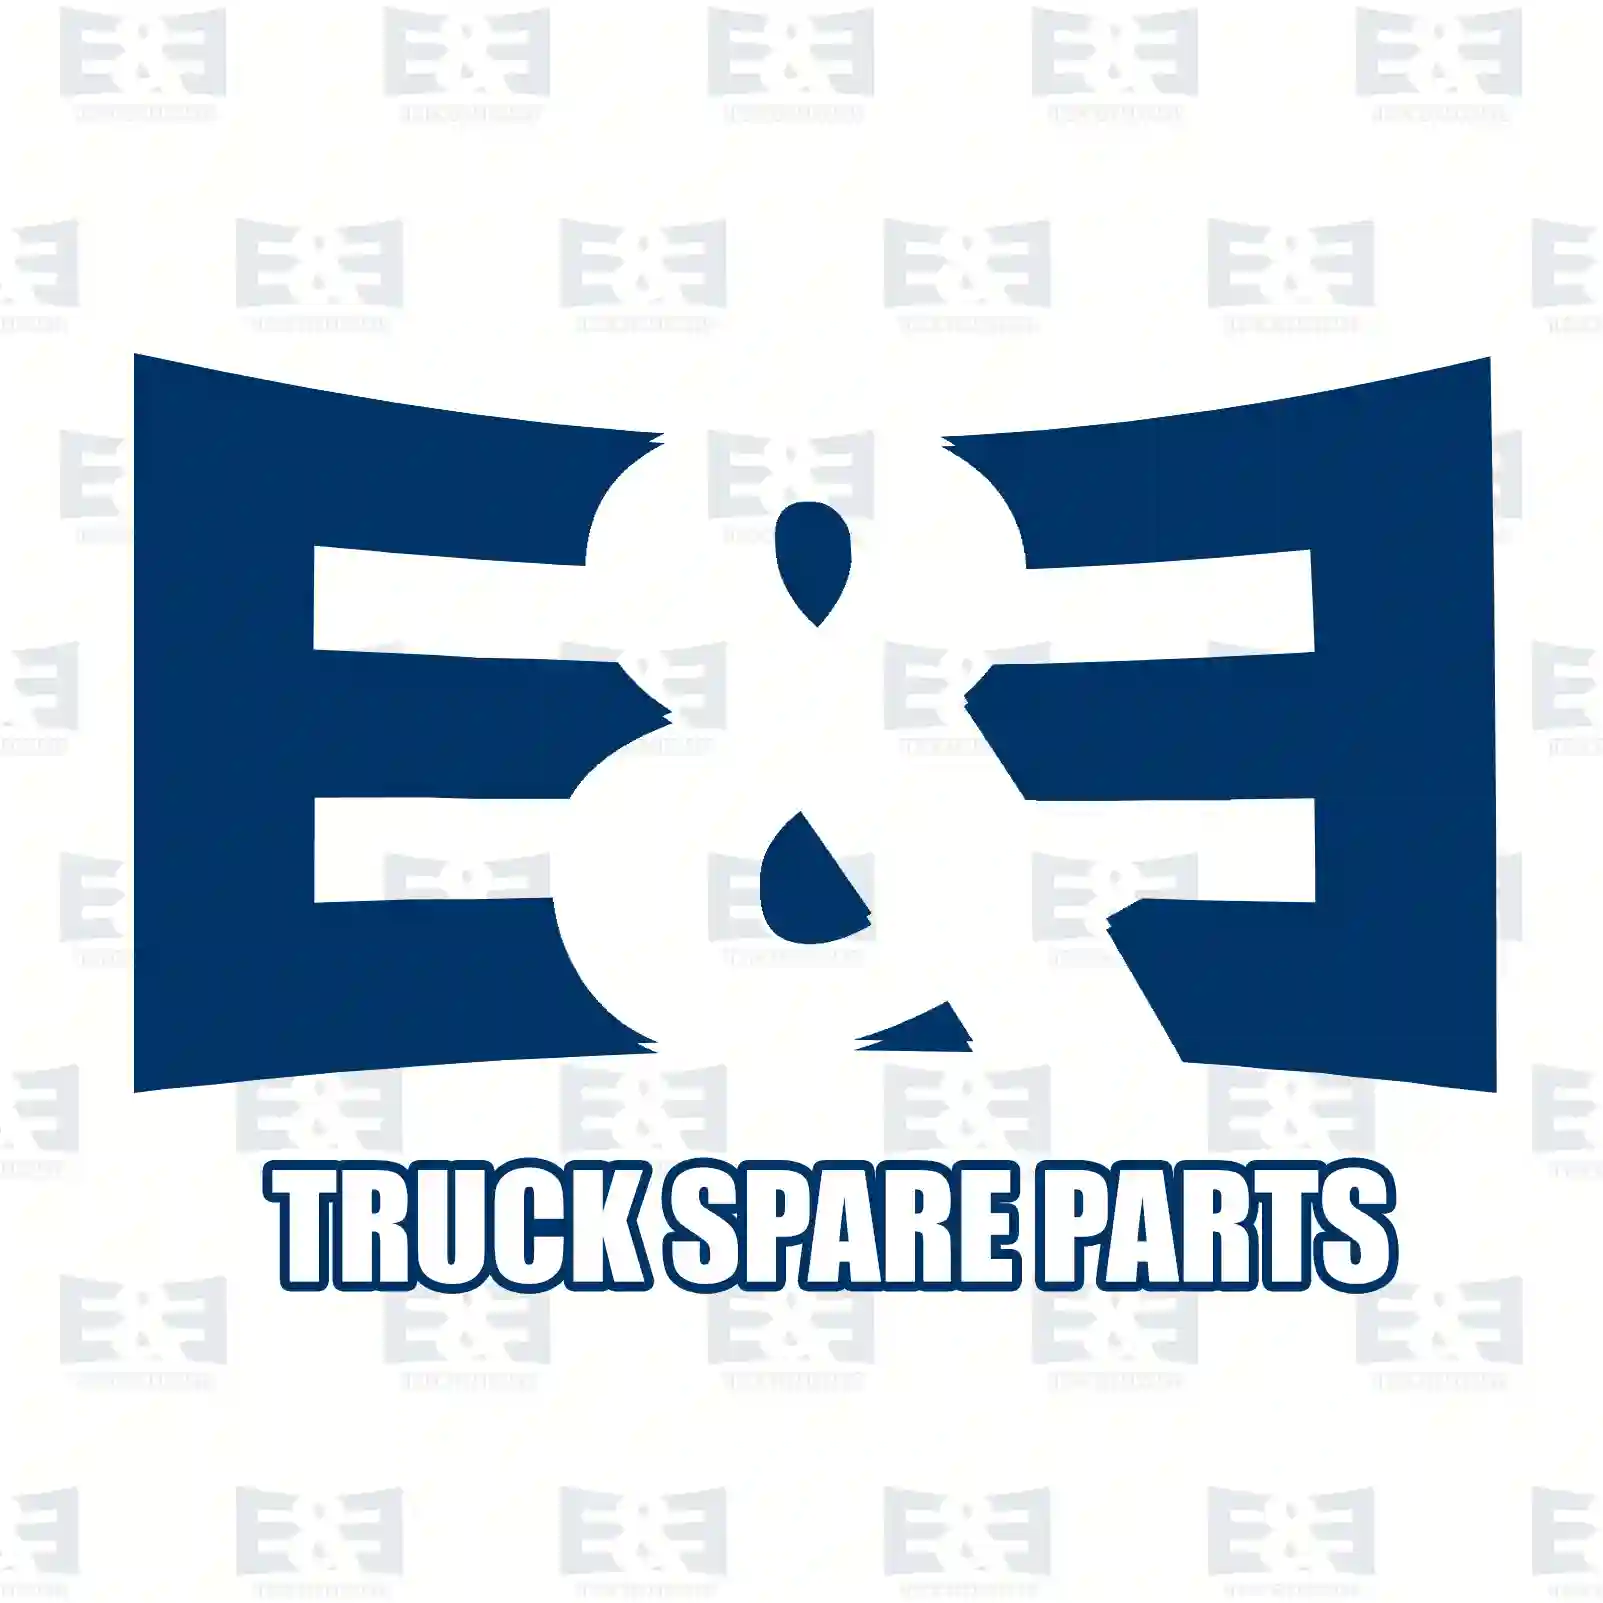 Counter shaft, 2E2278796, 20366691, 2036693 ||  2E2278796 E&E Truck Spare Parts | Truck Spare Parts, Auotomotive Spare Parts Counter shaft, 2E2278796, 20366691, 2036693 ||  2E2278796 E&E Truck Spare Parts | Truck Spare Parts, Auotomotive Spare Parts